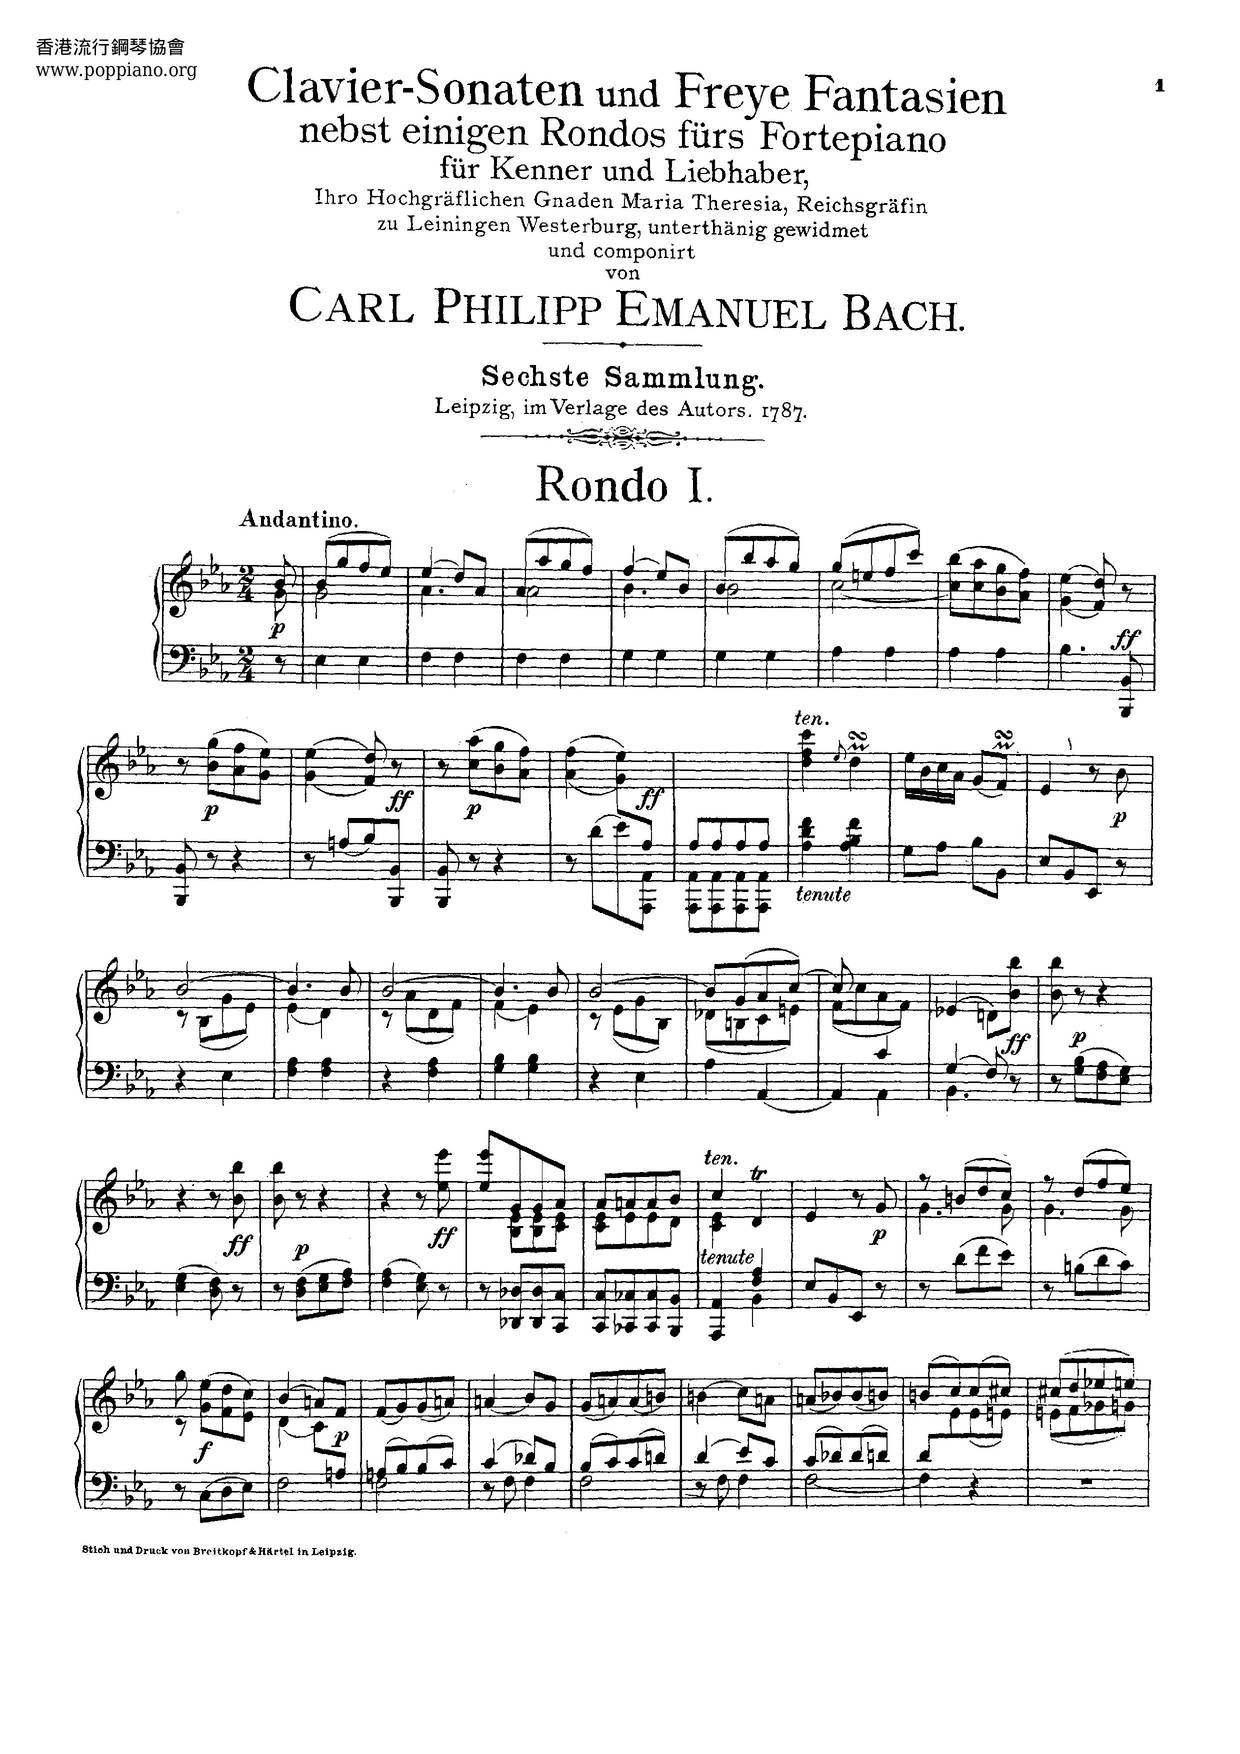 Clavier-Sonaten Für Kenner Und Liebhaber, Wq.55-59, 61琴谱